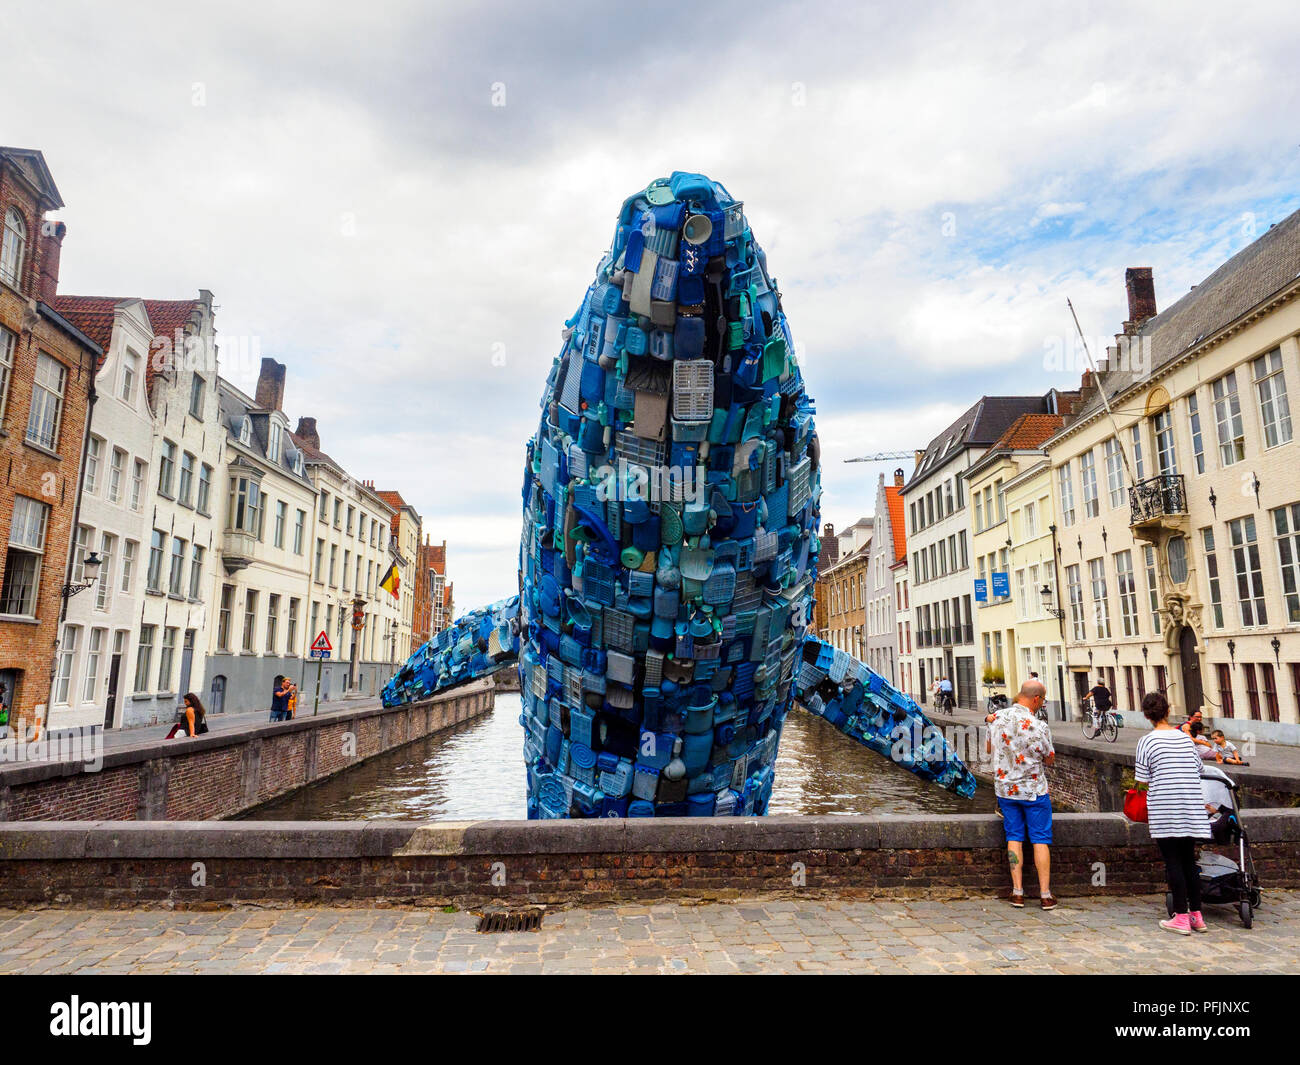 Gratte-ciel (la baleine) Bruges par Studio KCA (USA) est une sculpture géante, construite à partir de déchets dans le cadre de l'examen triennal pour l'Art contemporain et architecture intitulée "Liquid City', un parcours artistique à travers le cœur de la ville historique. Le thème central est la ville de liquide - Bruges, Belgique Banque D'Images